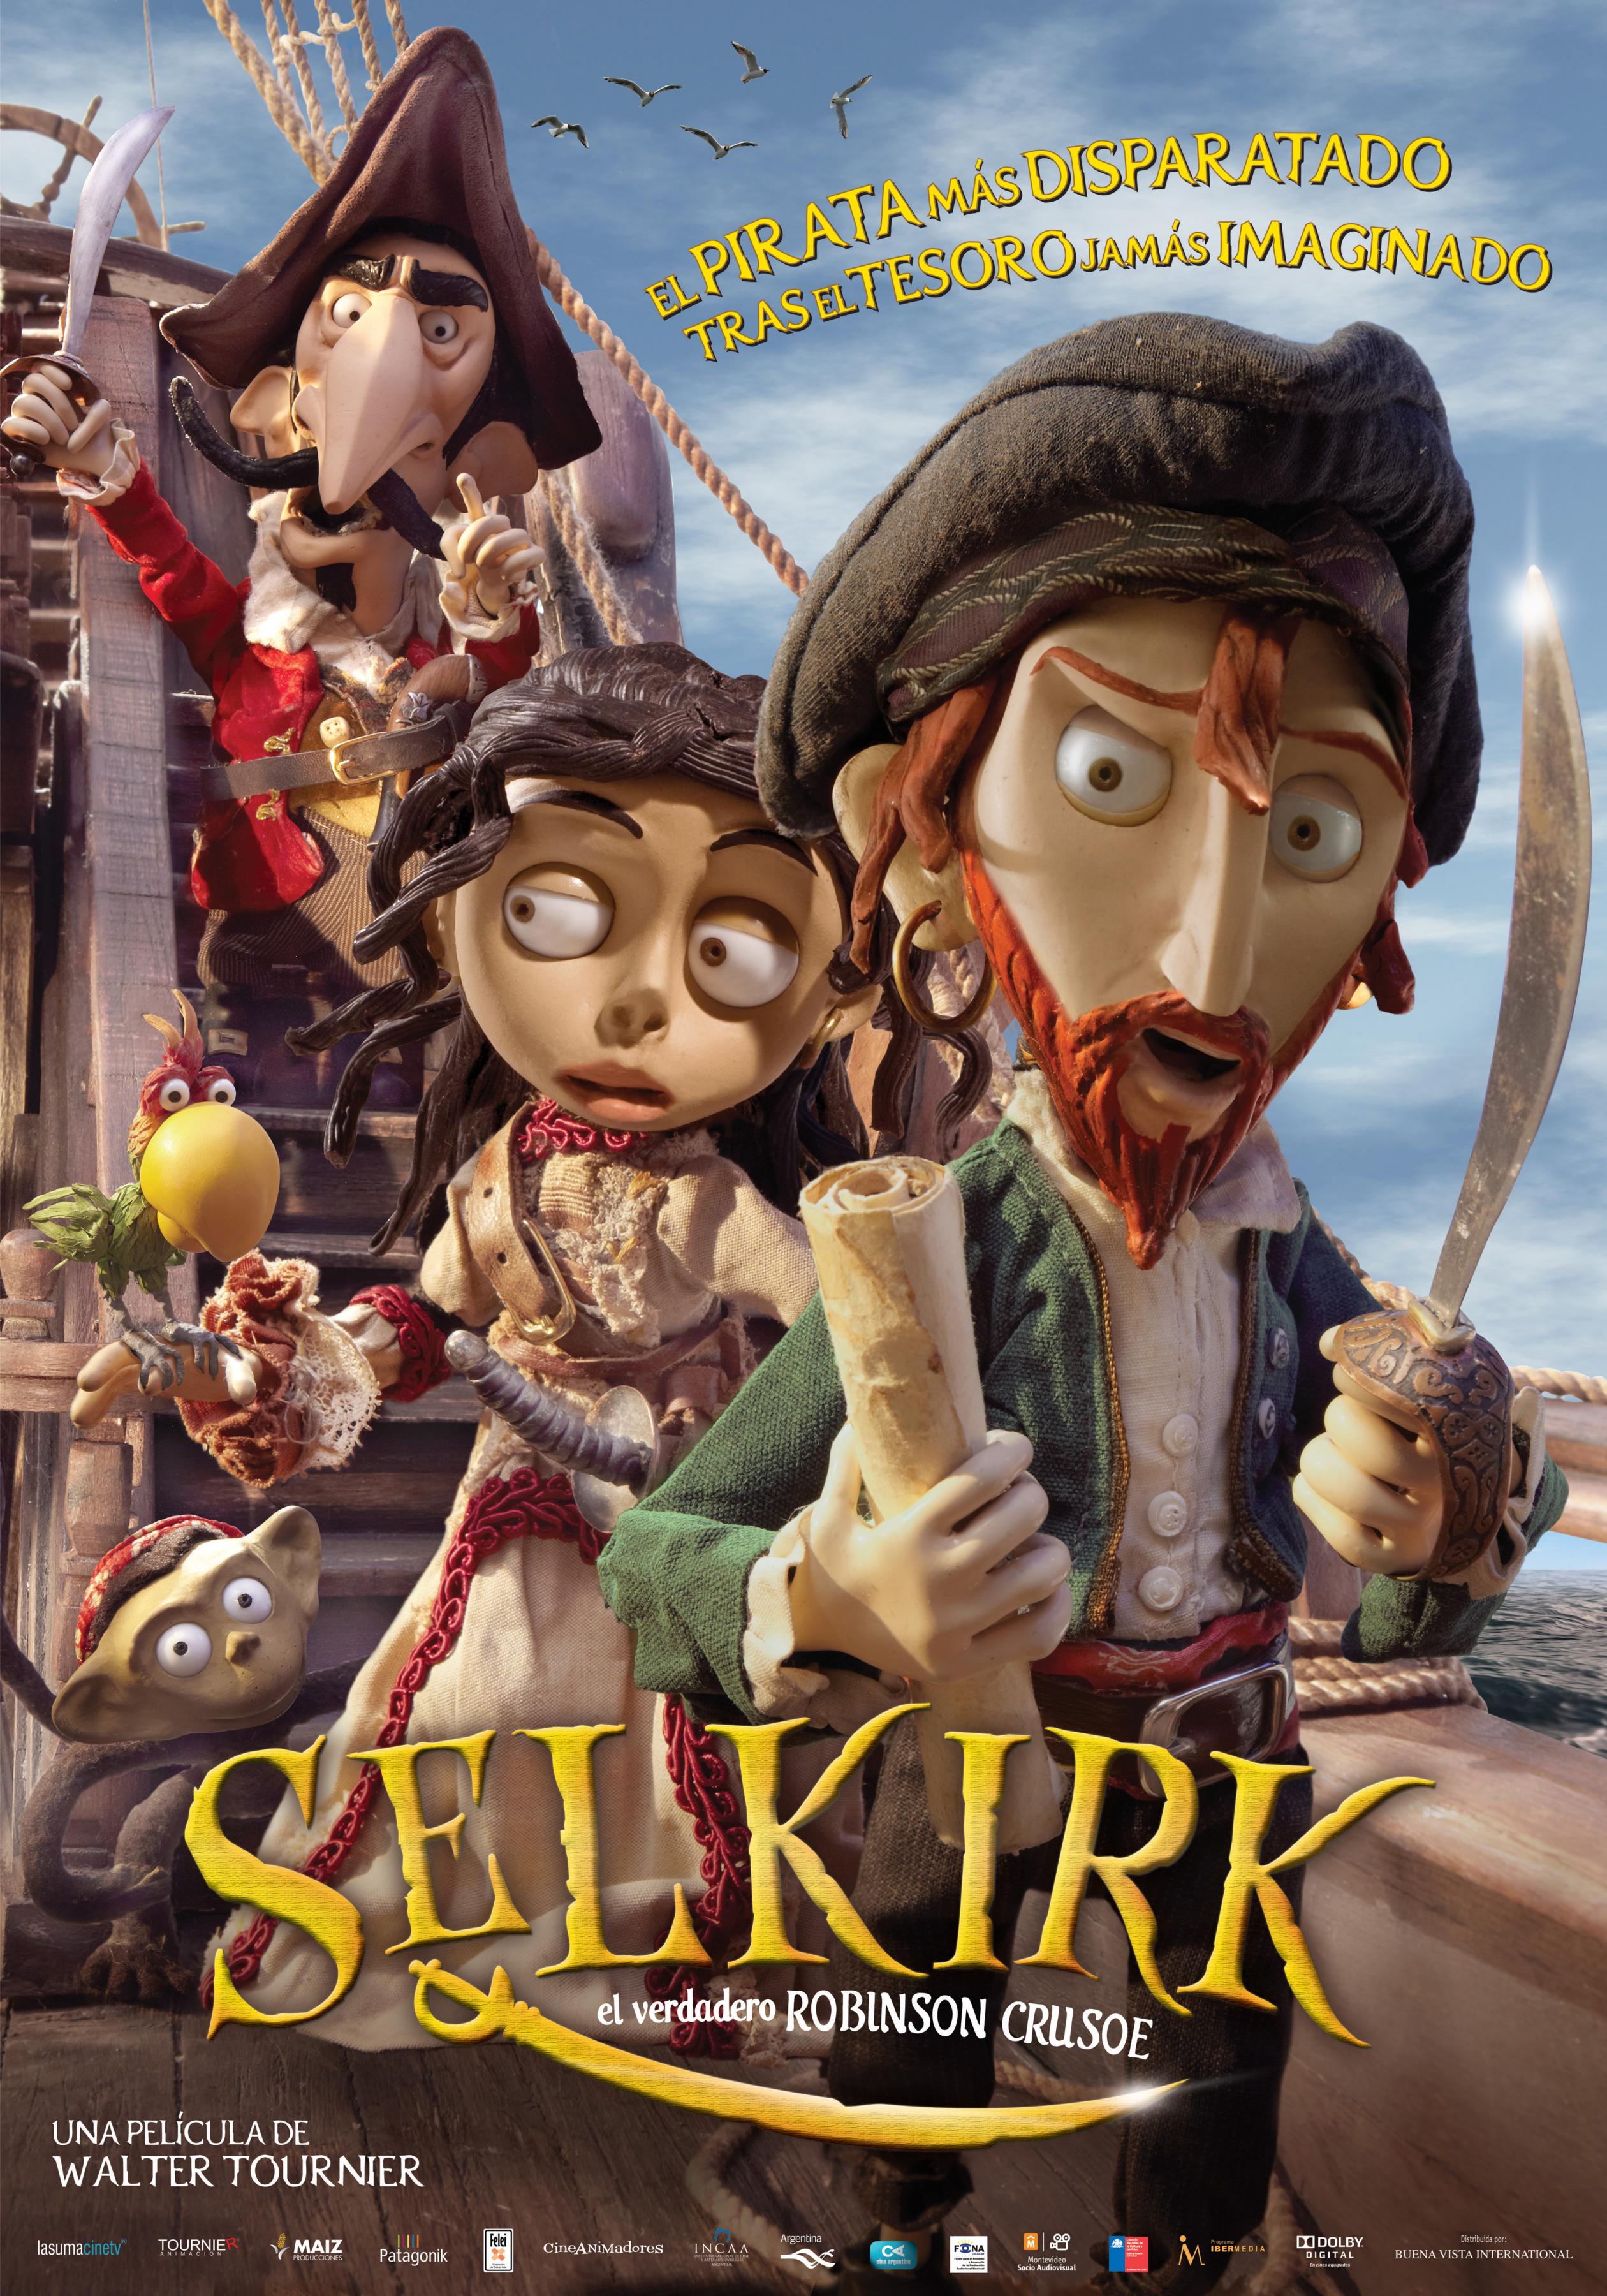 Постер фильма Робинзон Крузо: Предводитель пиратов | Selkirk, el verdadero Robinson Crusoe